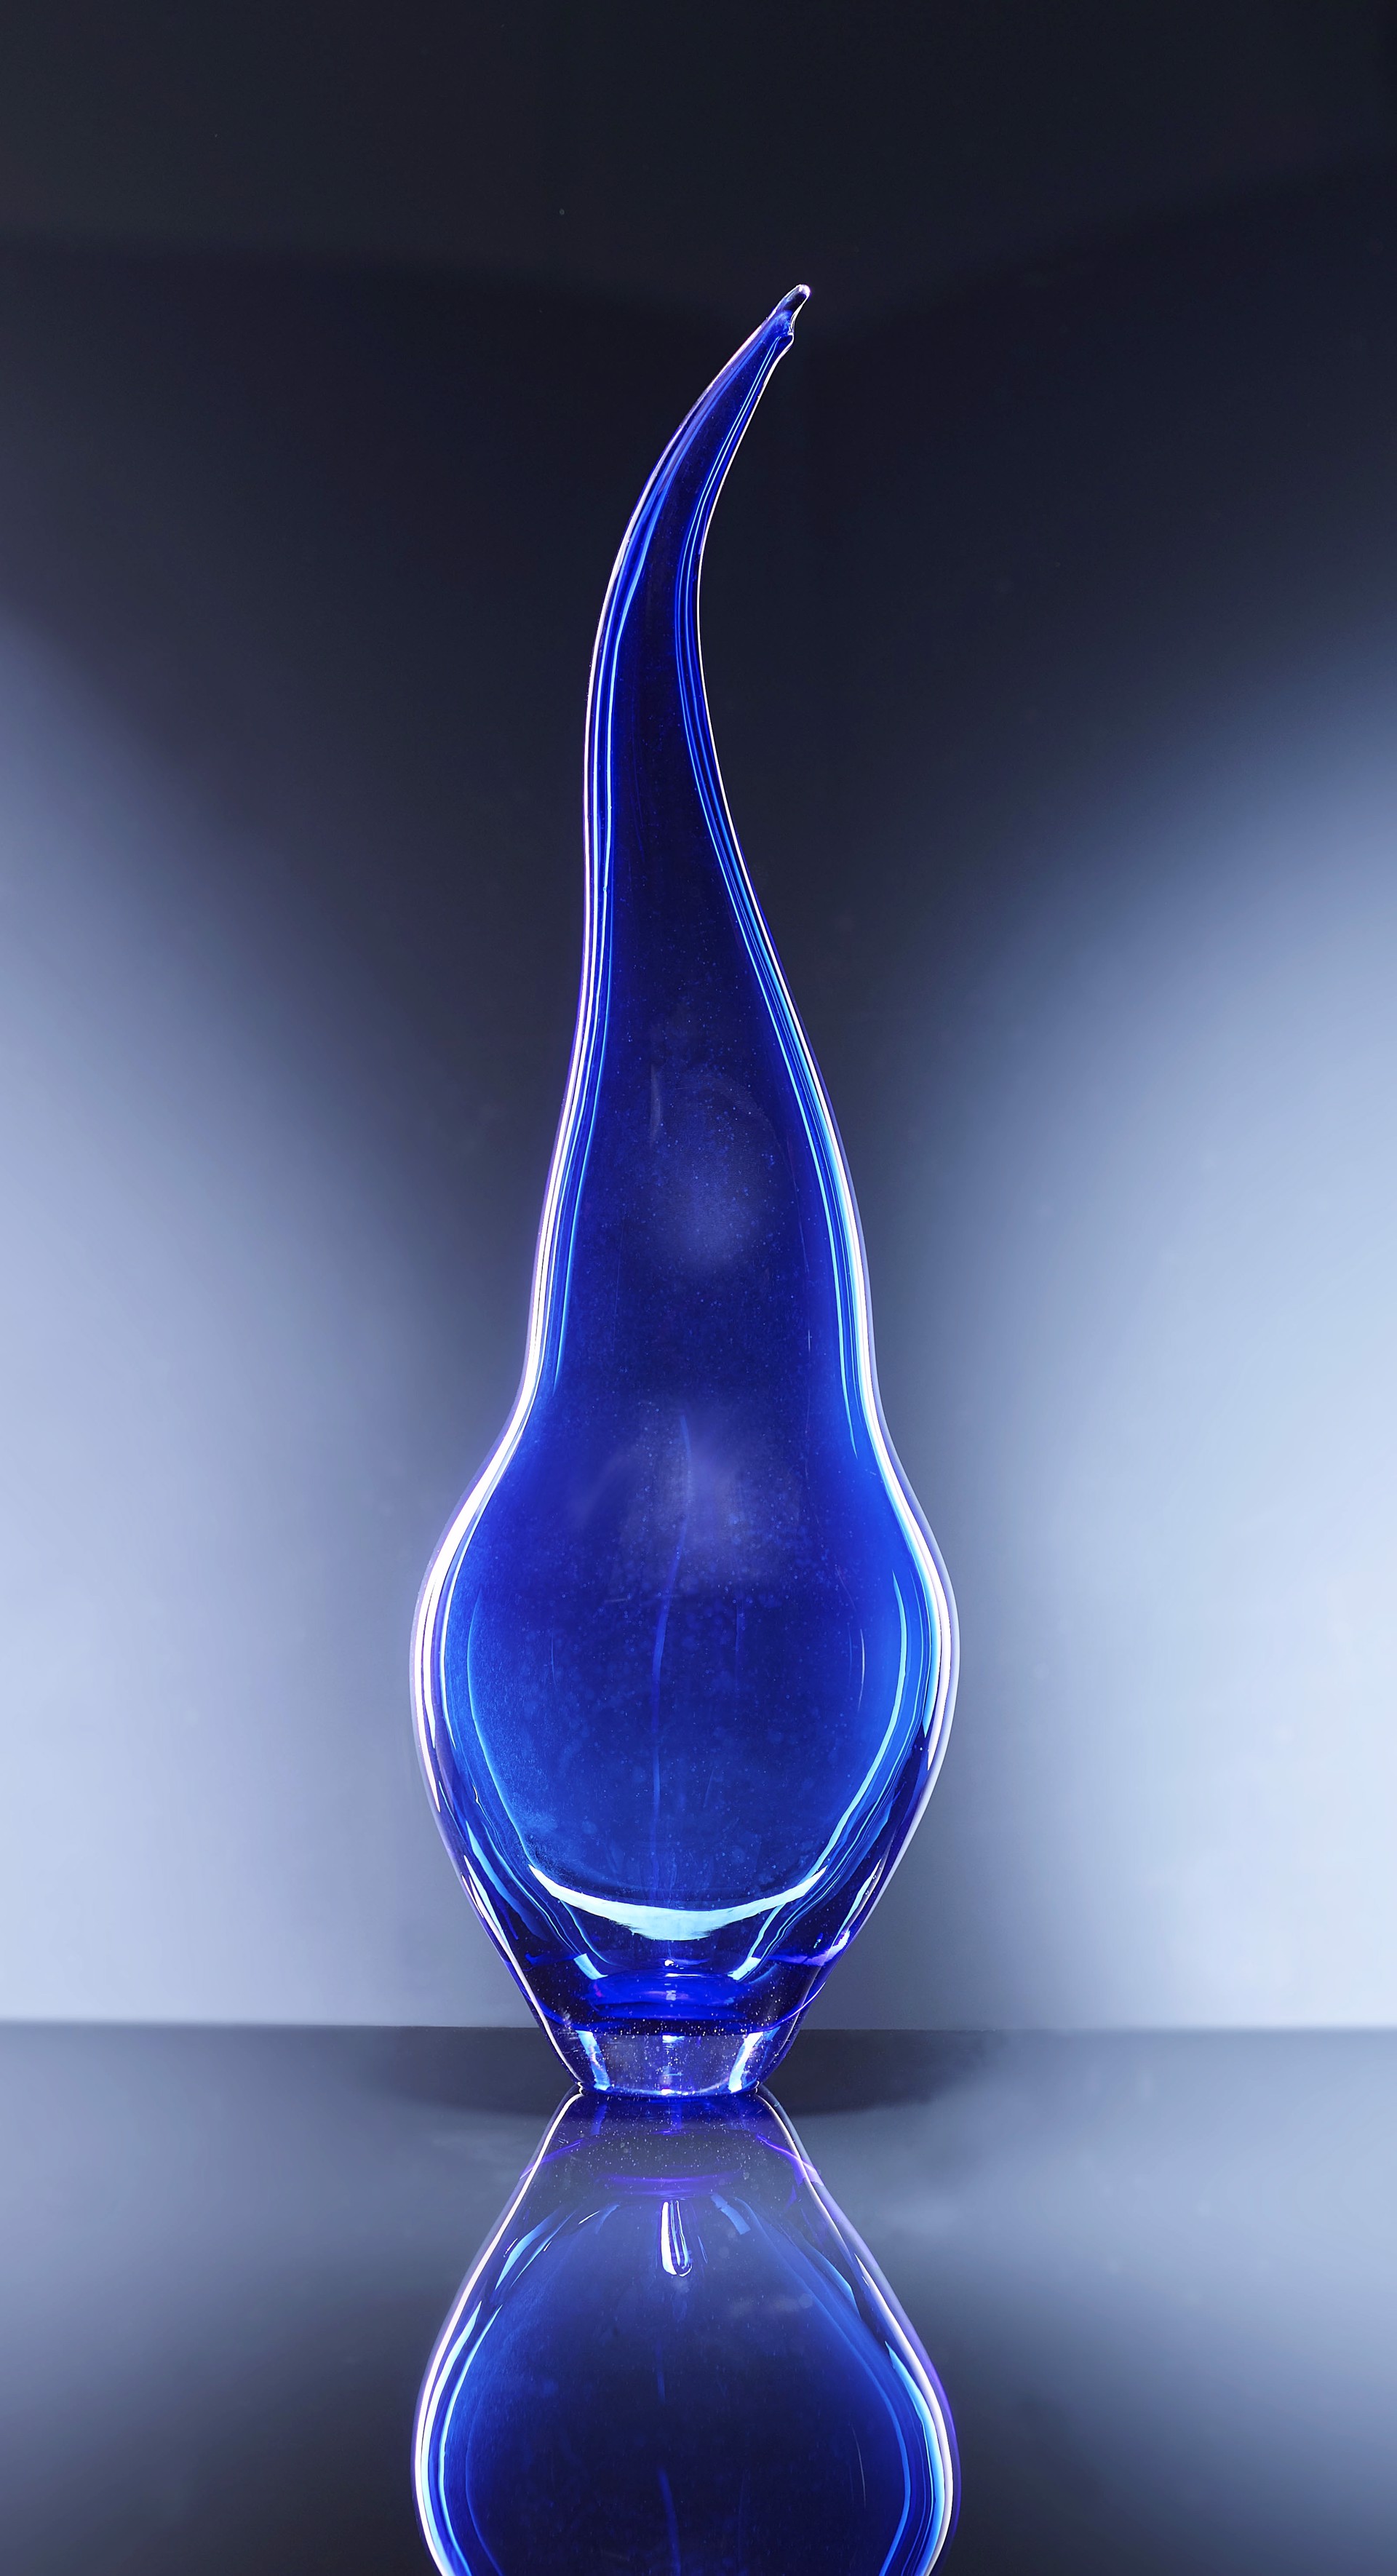 Cerulean Blue Silhouette Bottle by Michael Moran